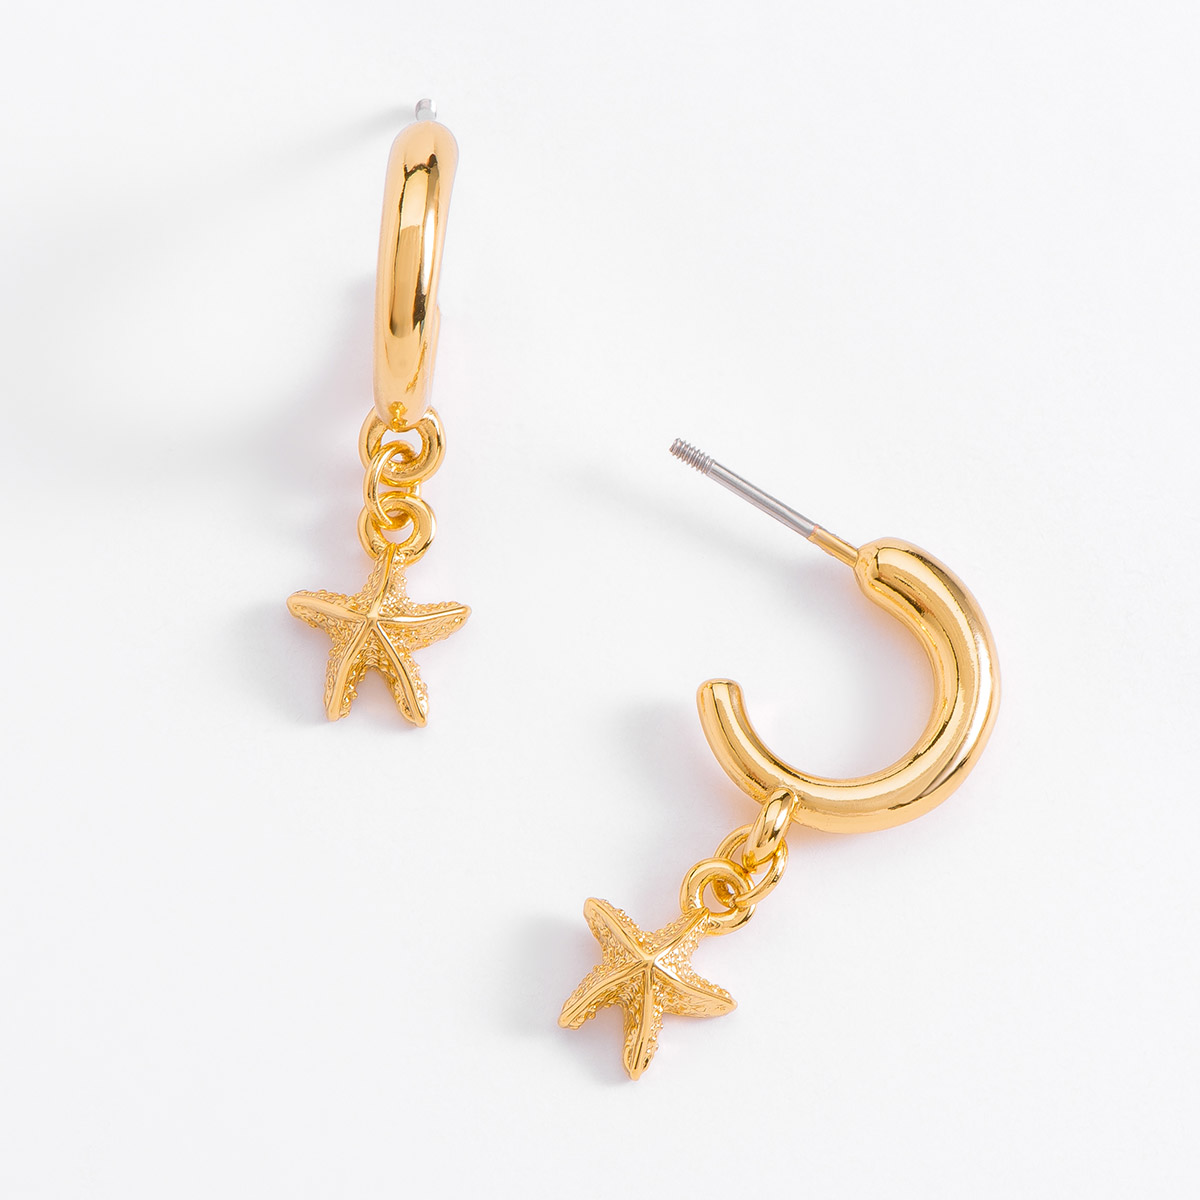 Aretes en baño de oro acompañados con un dije en forma de estrella de mar, para complementar tu collar.
-Aretes con Poste
-Oro 18K